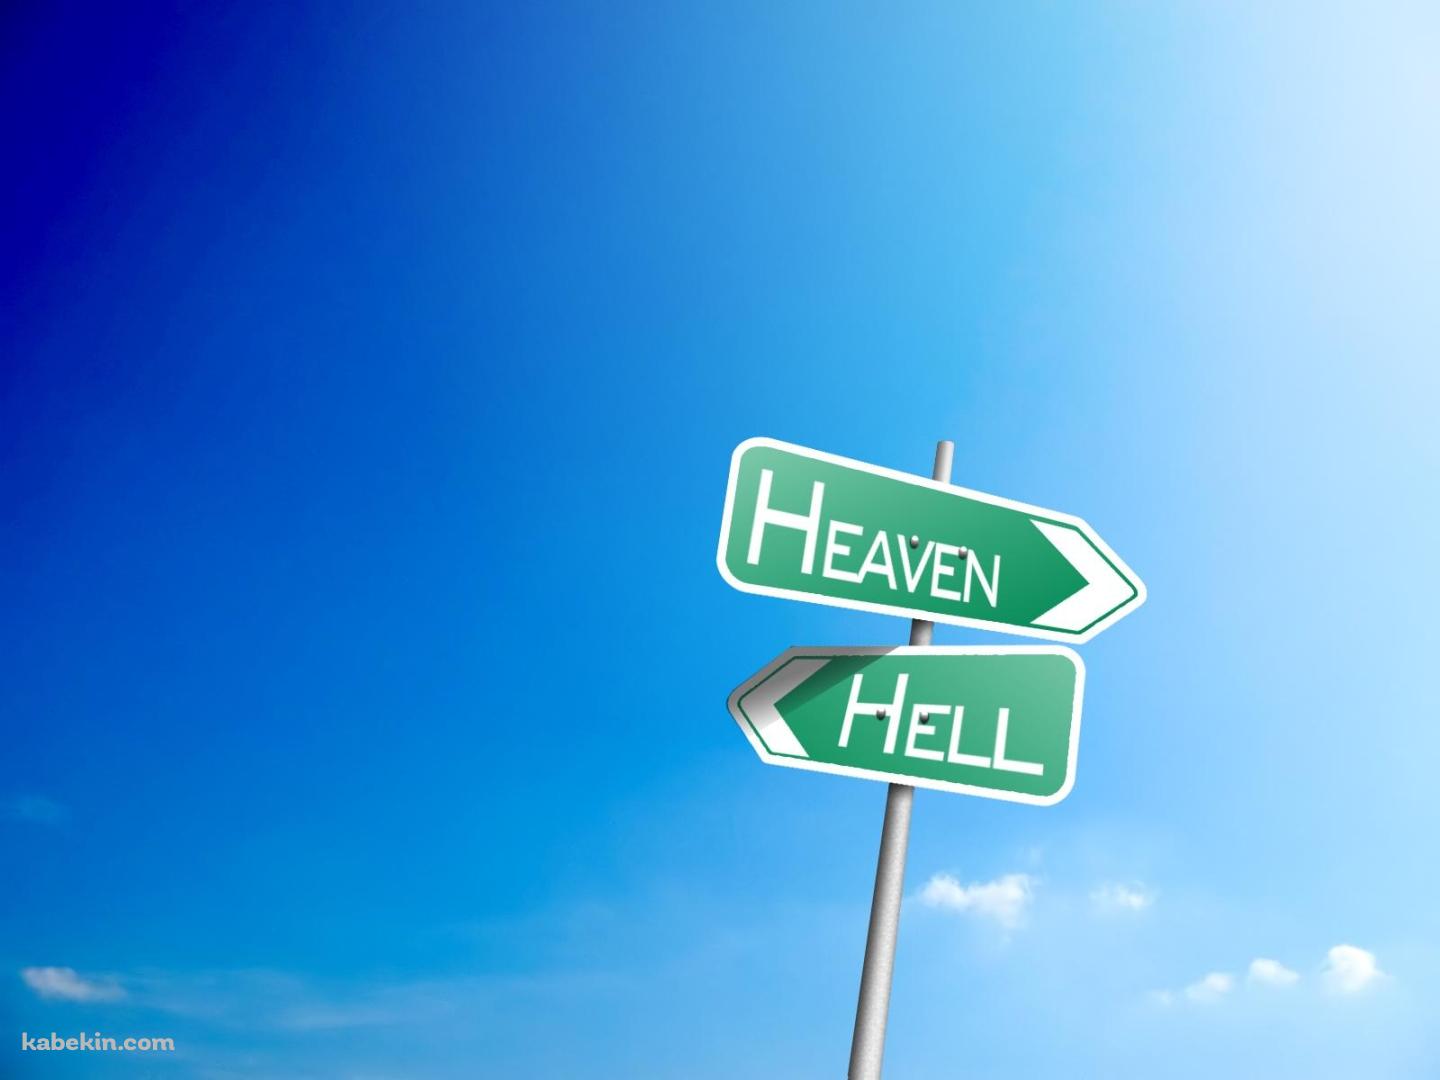 天国と地獄の壁紙(1440px x 1080px) 高画質 PC・デスクトップ用